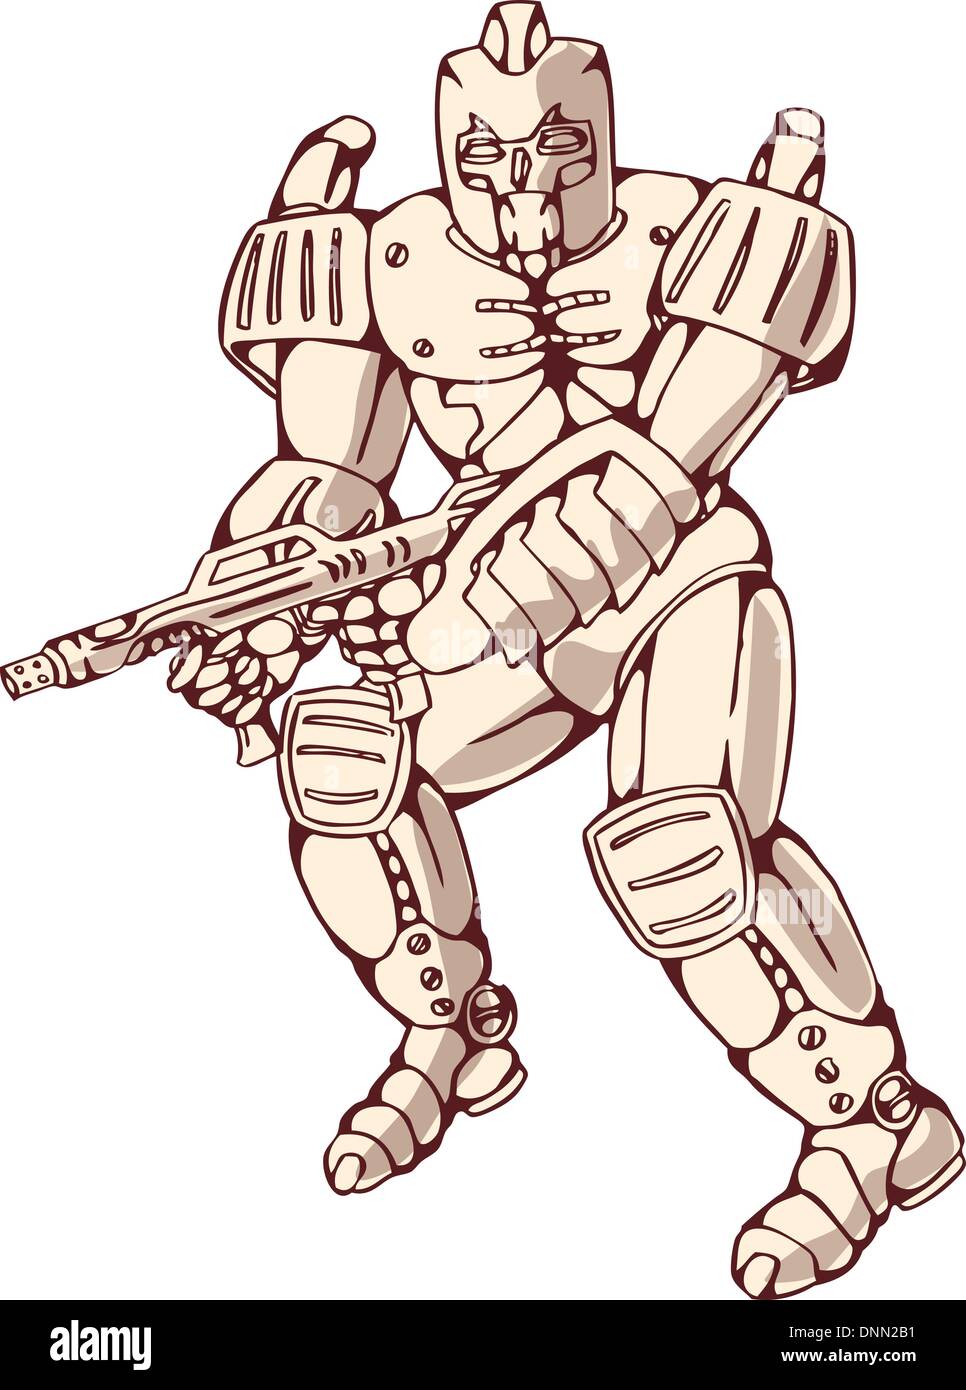 Illustrazione di un mecha robot guerriero jumping sparare pistola vista laterale isolata su sfondo bianco Illustrazione Vettoriale